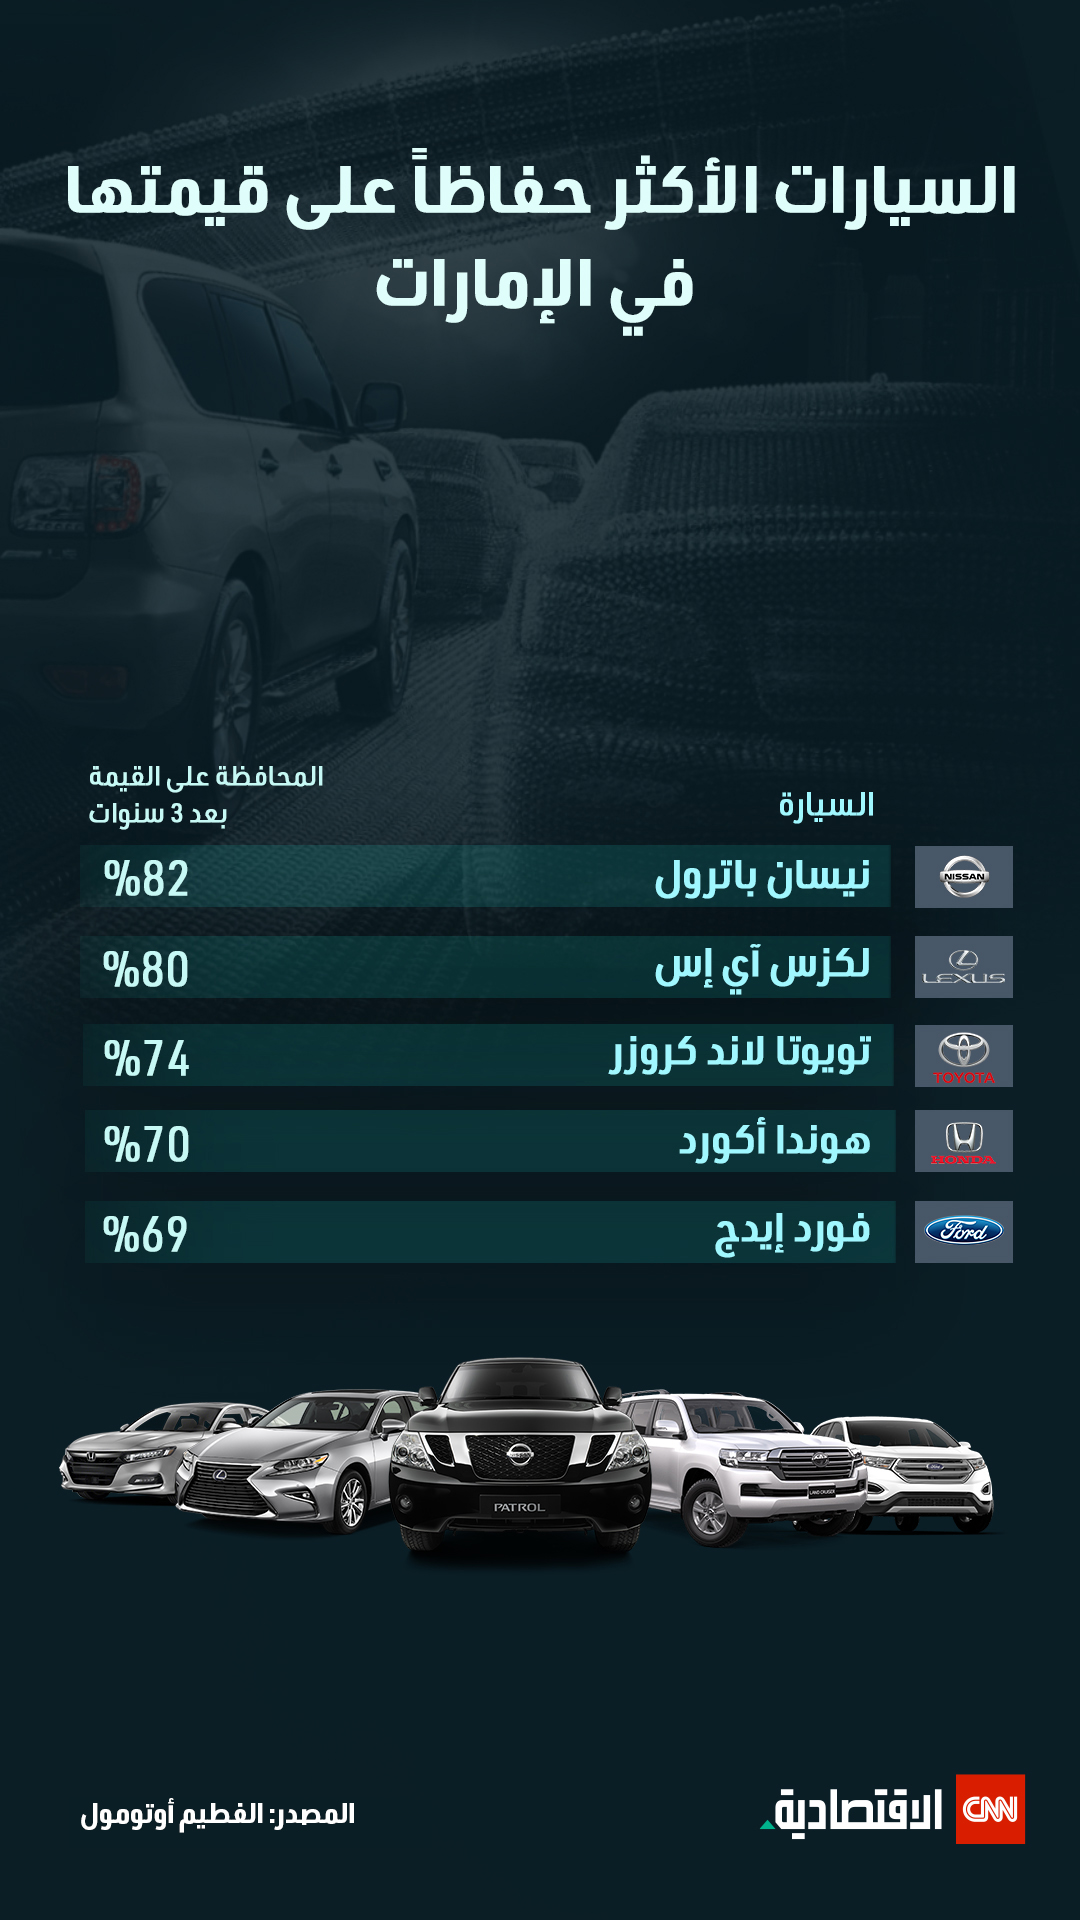 السيارات المستعملة في الإمارات تشهد طلباً غير مسبوق